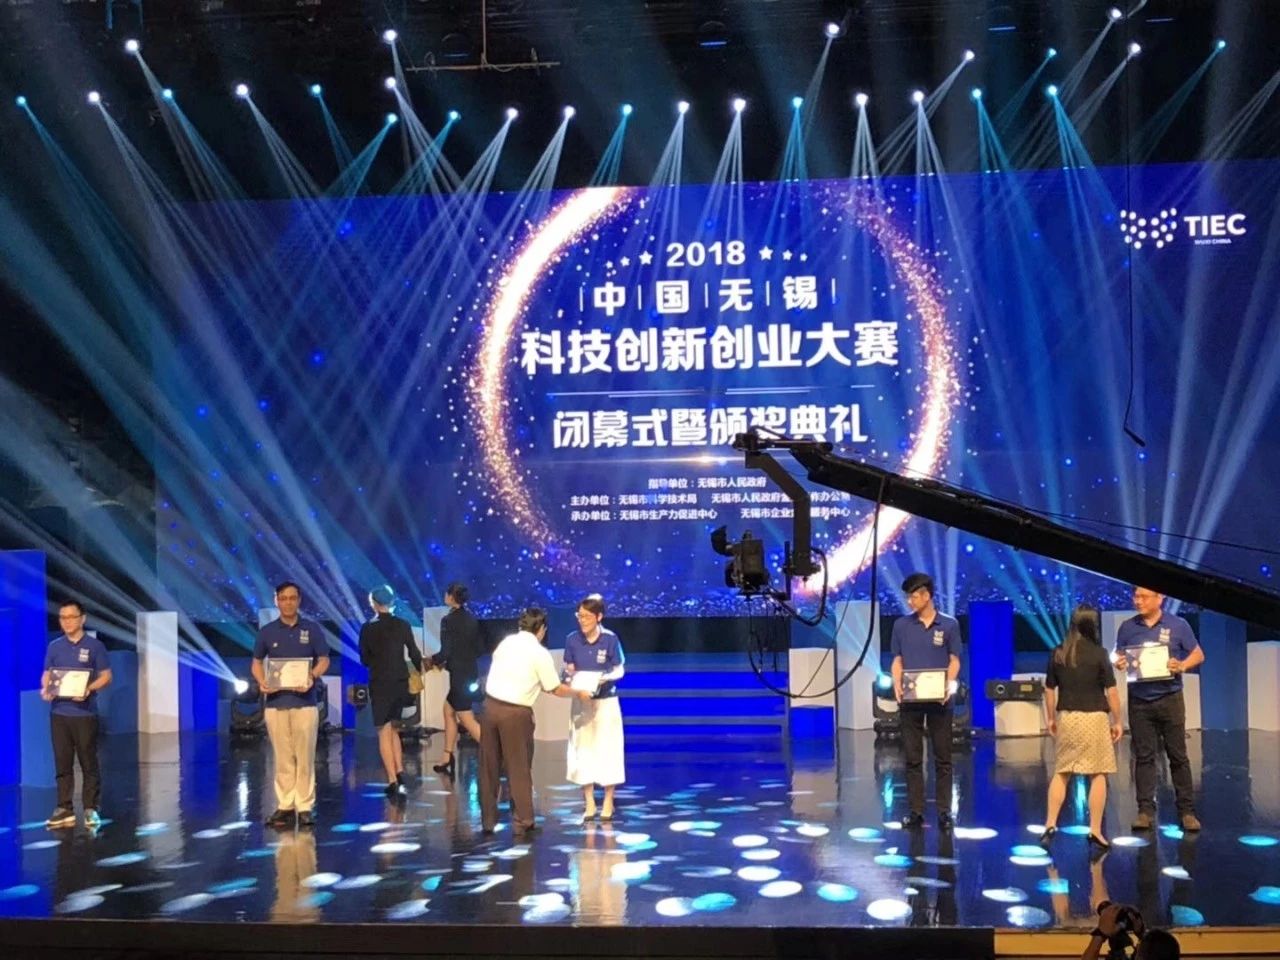 凯乐士勇夺第六届“创业江苏”科技创业大赛第二名